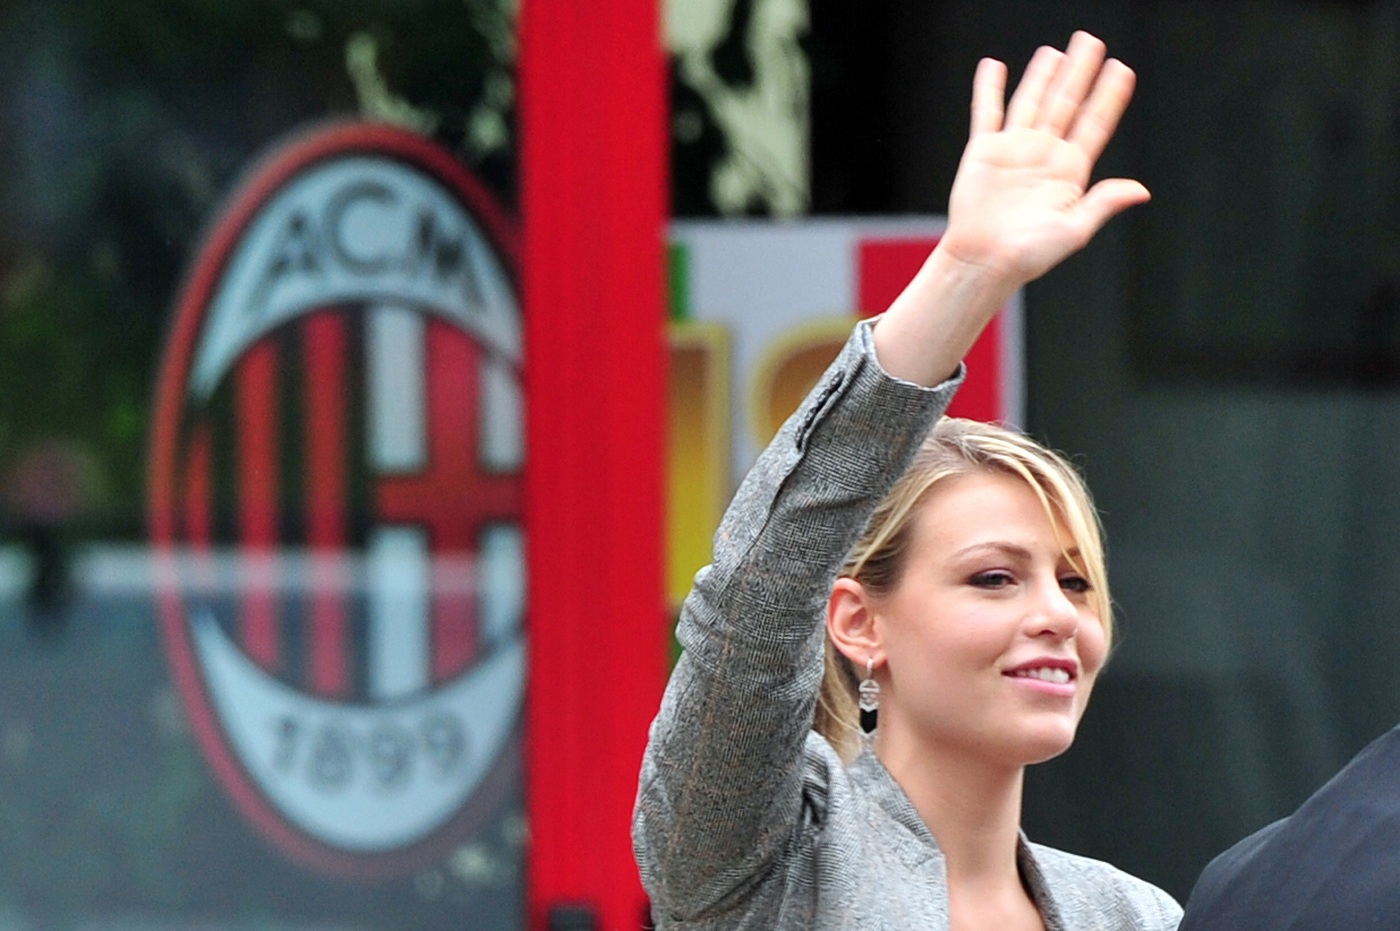 Il Milan sceglie il Portello: addio all’idea di uno stadio a Sesto